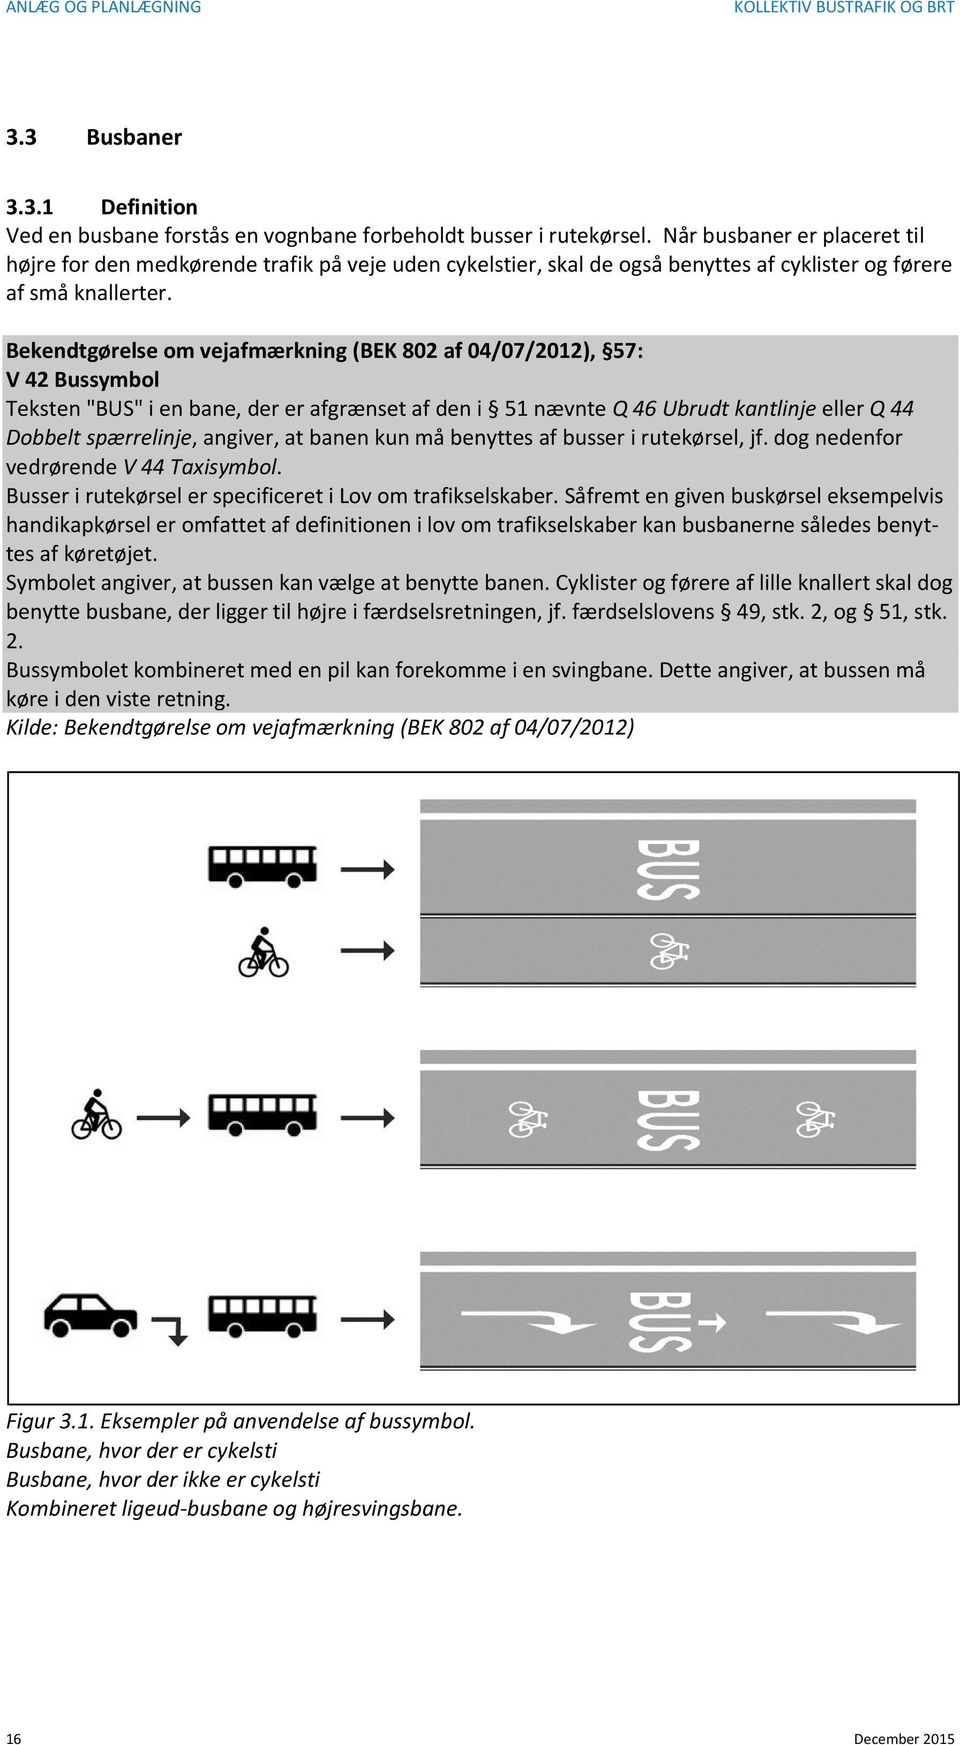 Bekendtgørelse om vejafmærkning (BEK 802 af 04/07/2012), 57: V 42 Bussymbol Teksten "BUS" i en bane, der er afgrænset af den i 51 nævnte Q 46 Ubrudt kantlinje eller Q 44 Dobbelt spærrelinje, angiver,